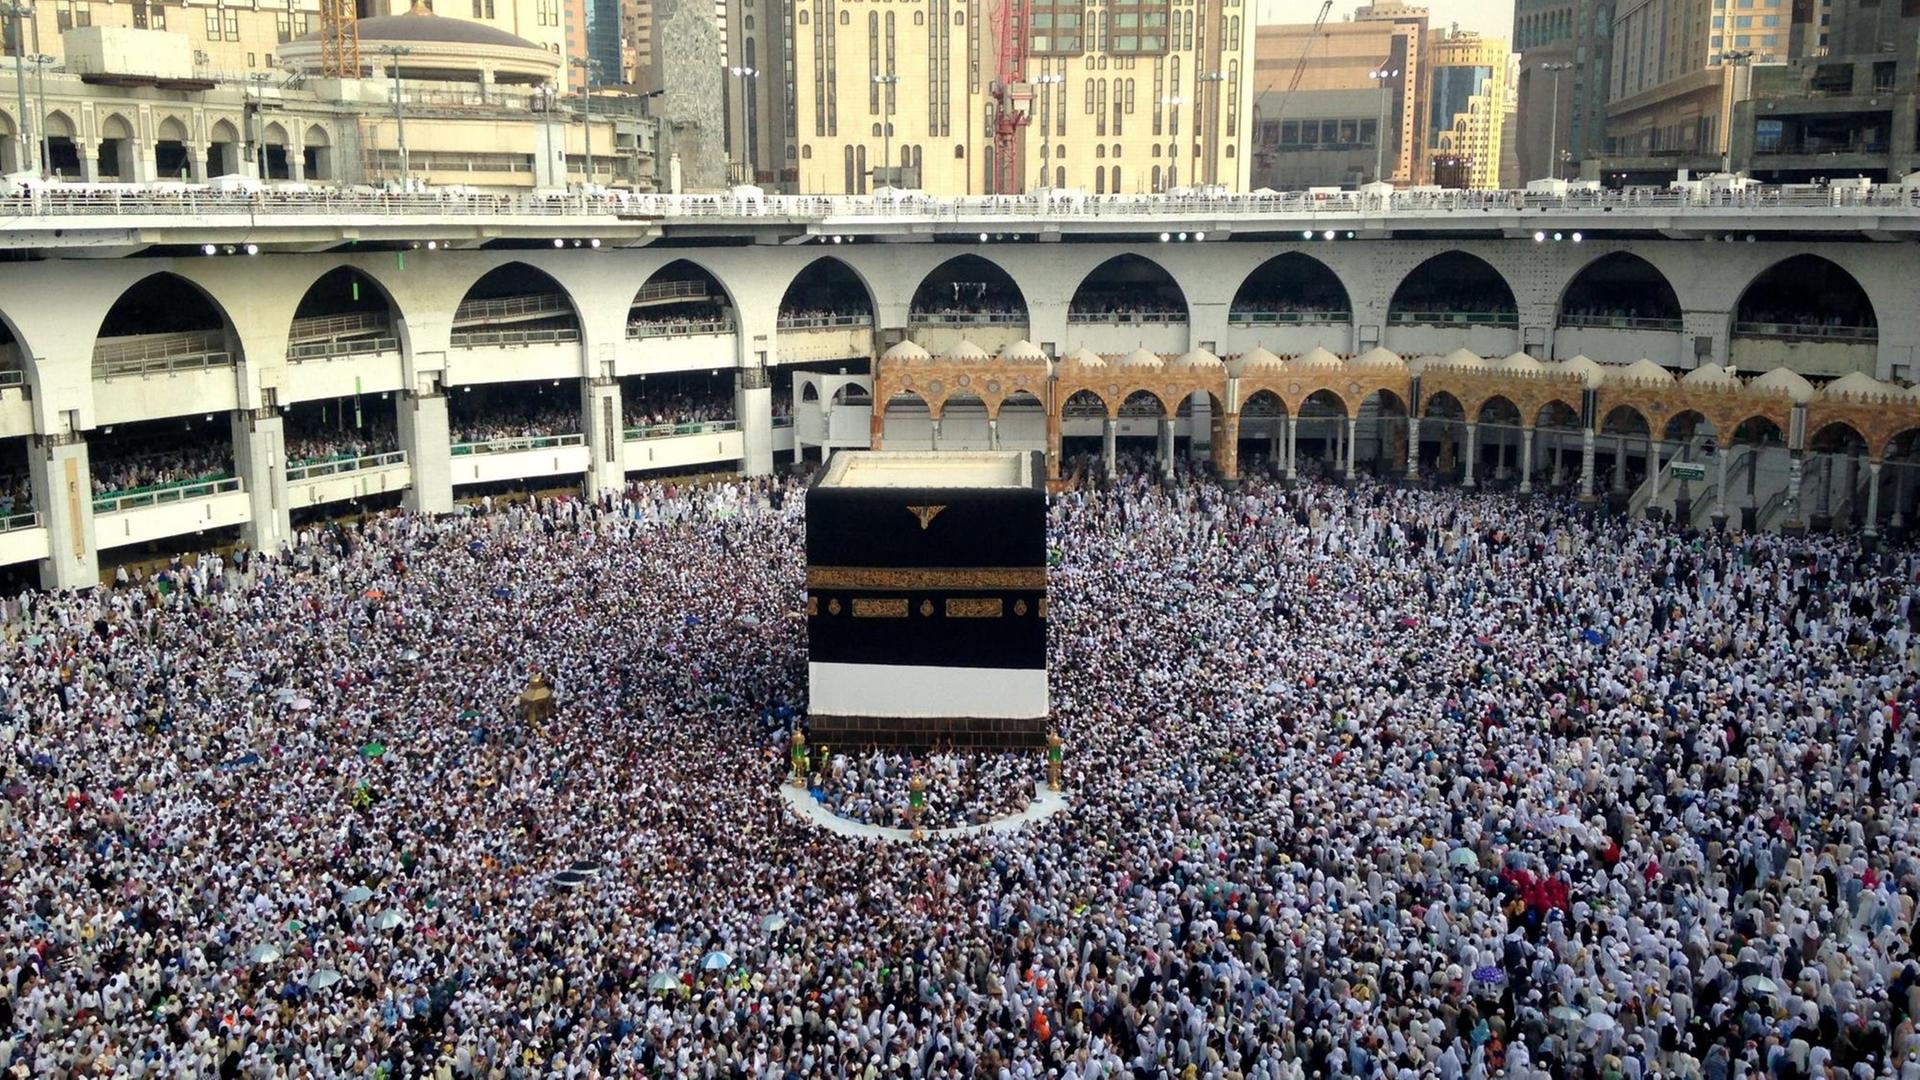 Muslimische Pilger in Mekka, Saudi Arabien. Sie laufen um die Kaaba in der Großen Moschee.